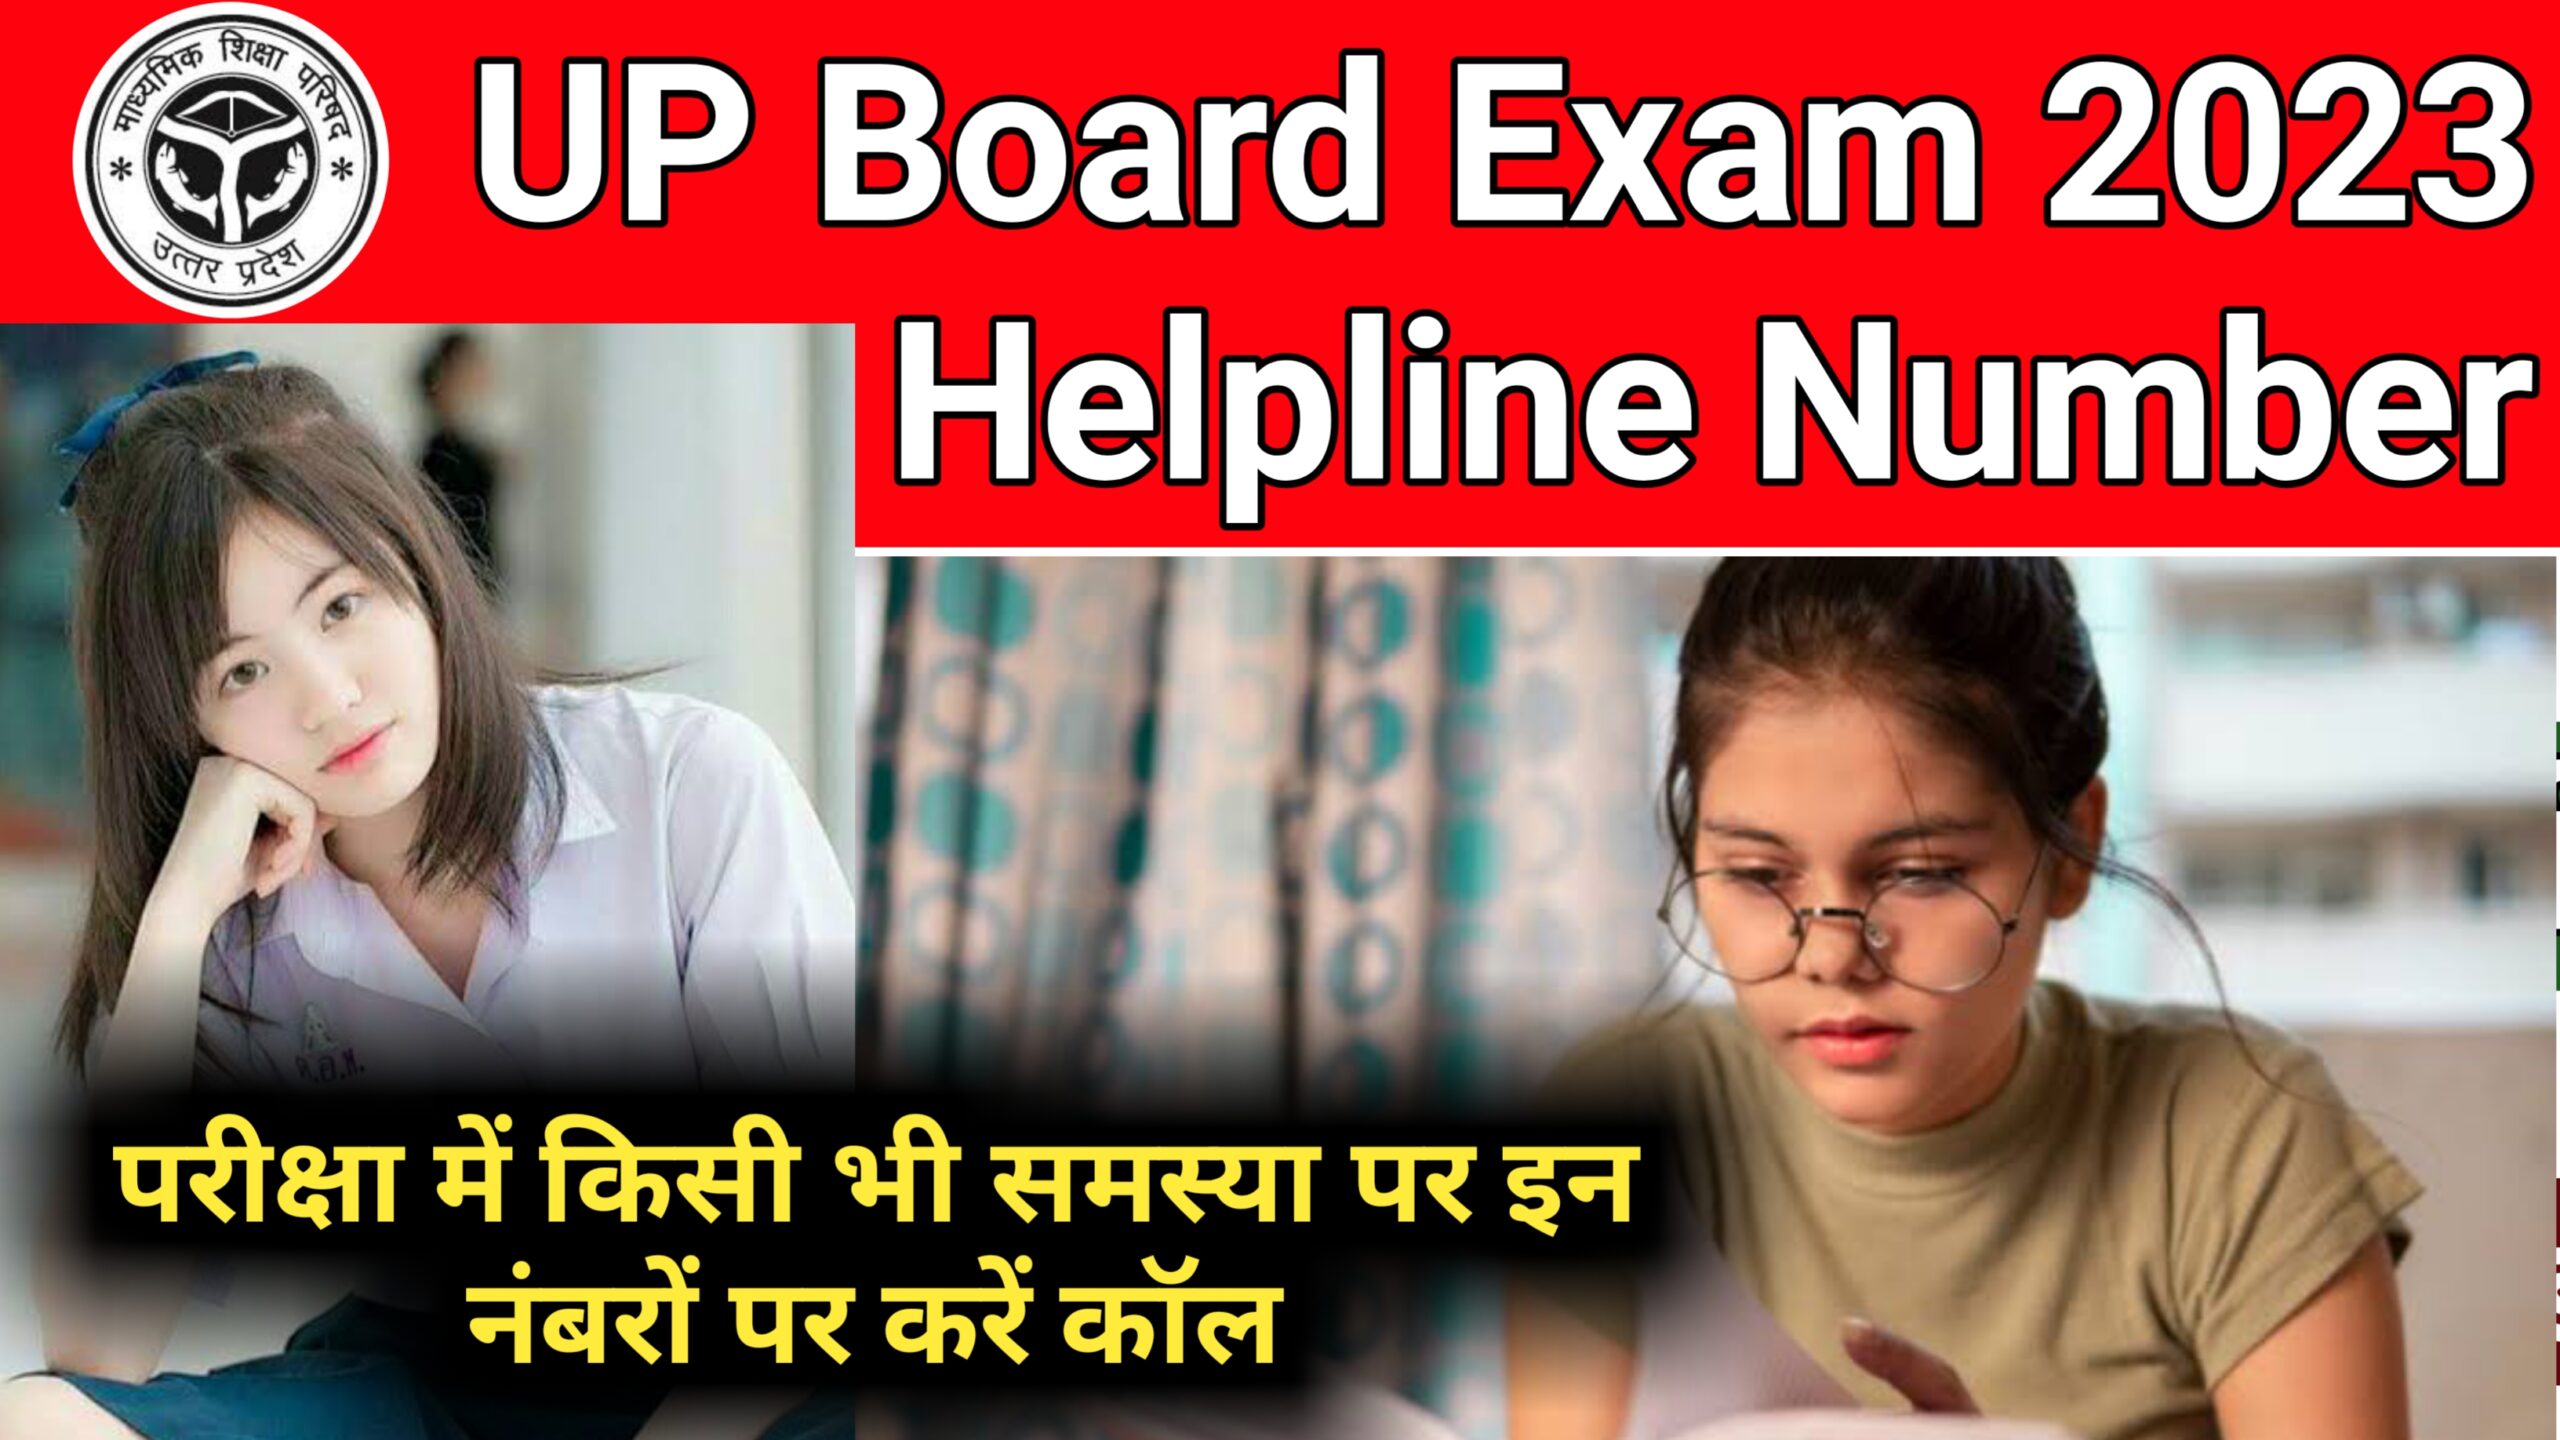 UP Board Exam 2023 Helpline Number